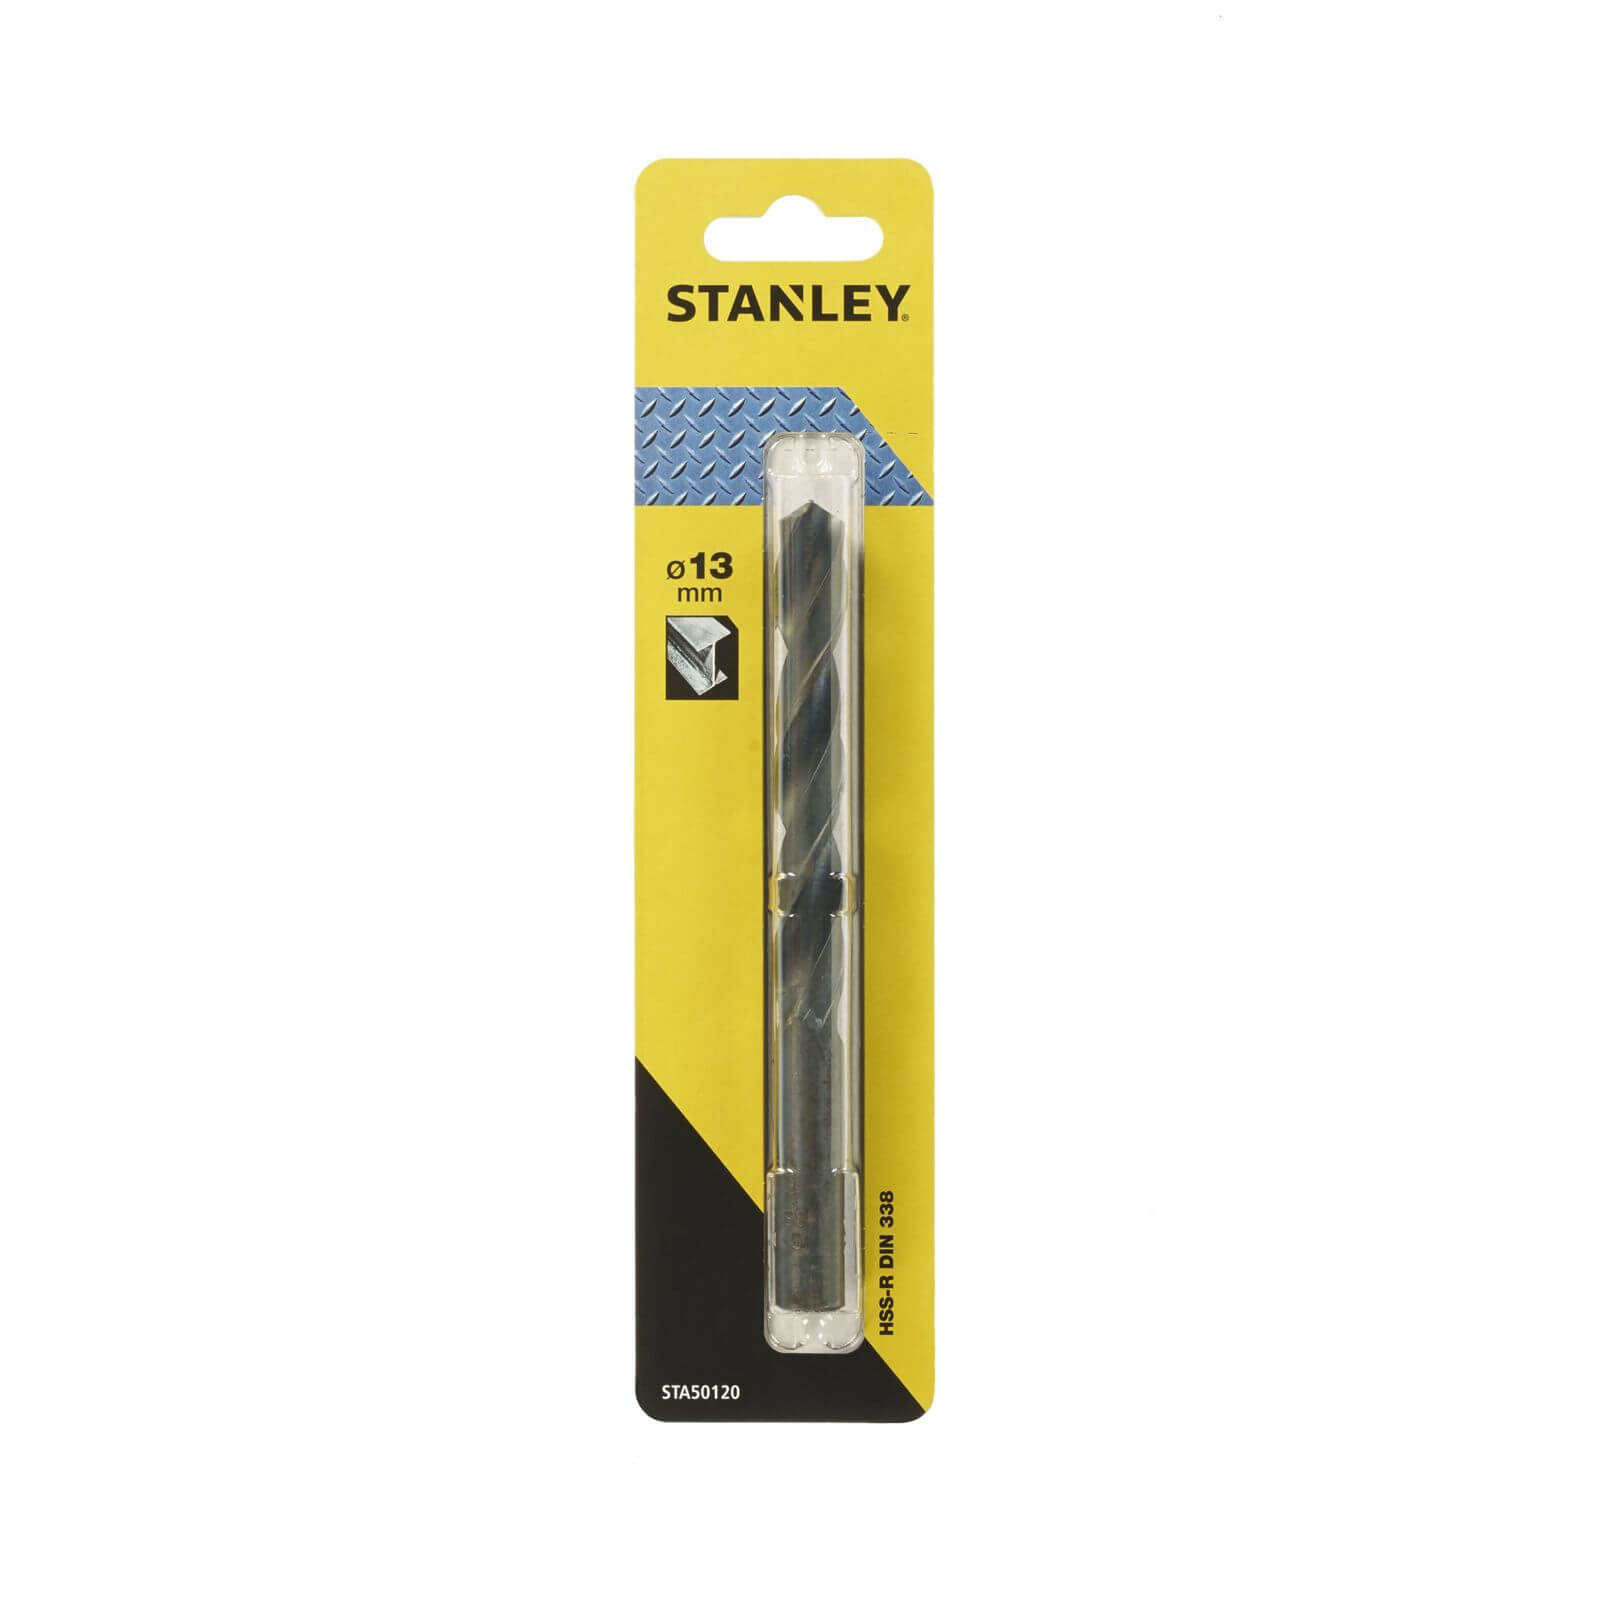 Stanley Metal Drill Bit 13mm -STA50120-QZ